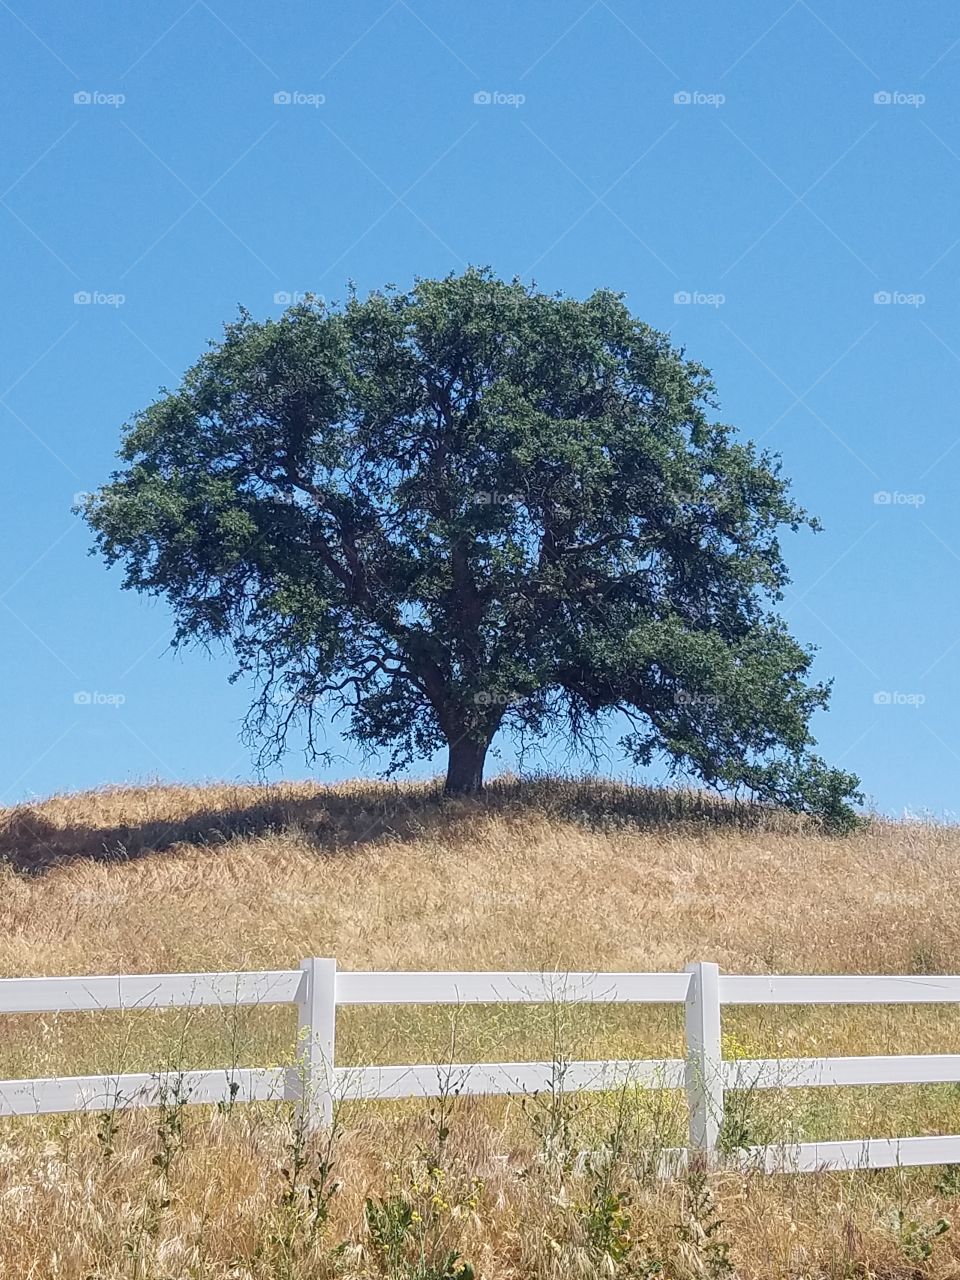 tree in a field.